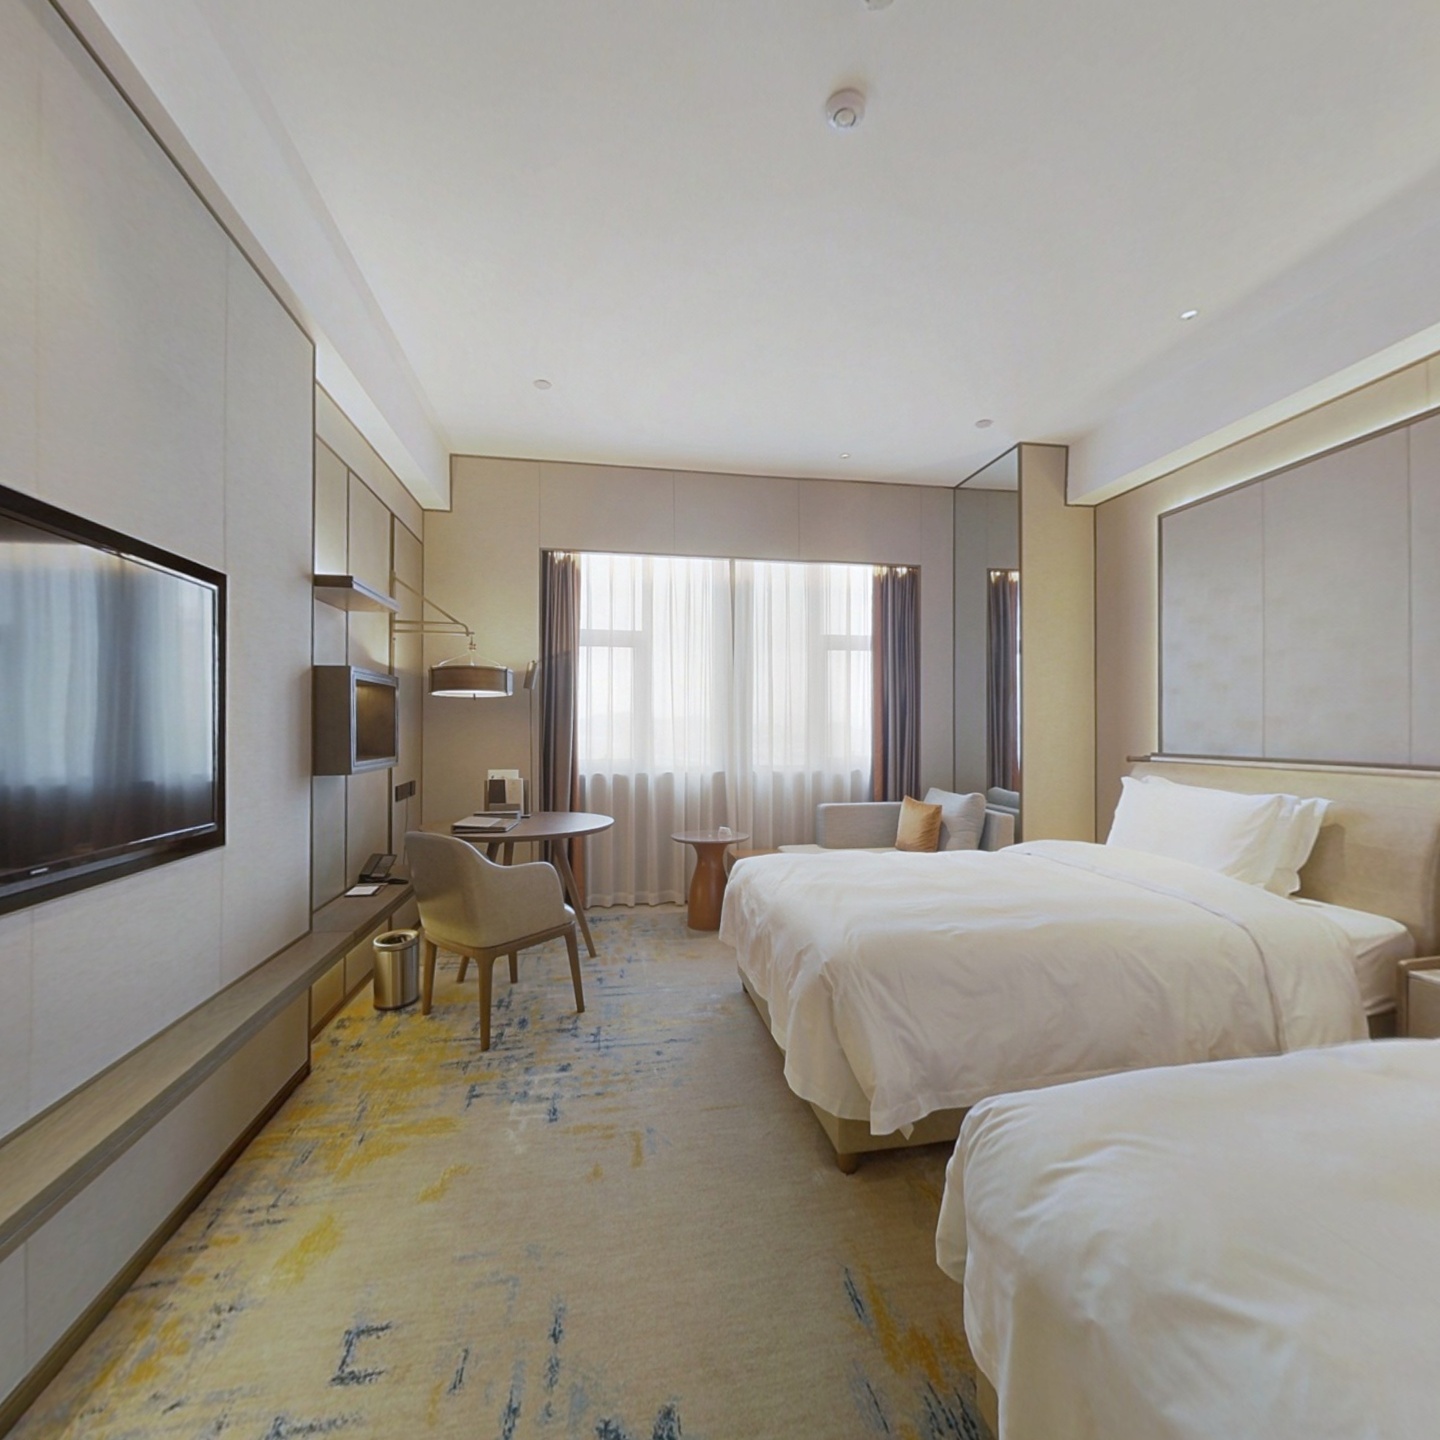 亚运会指定君廷酒店代管每年拿总价的6.5%为收益